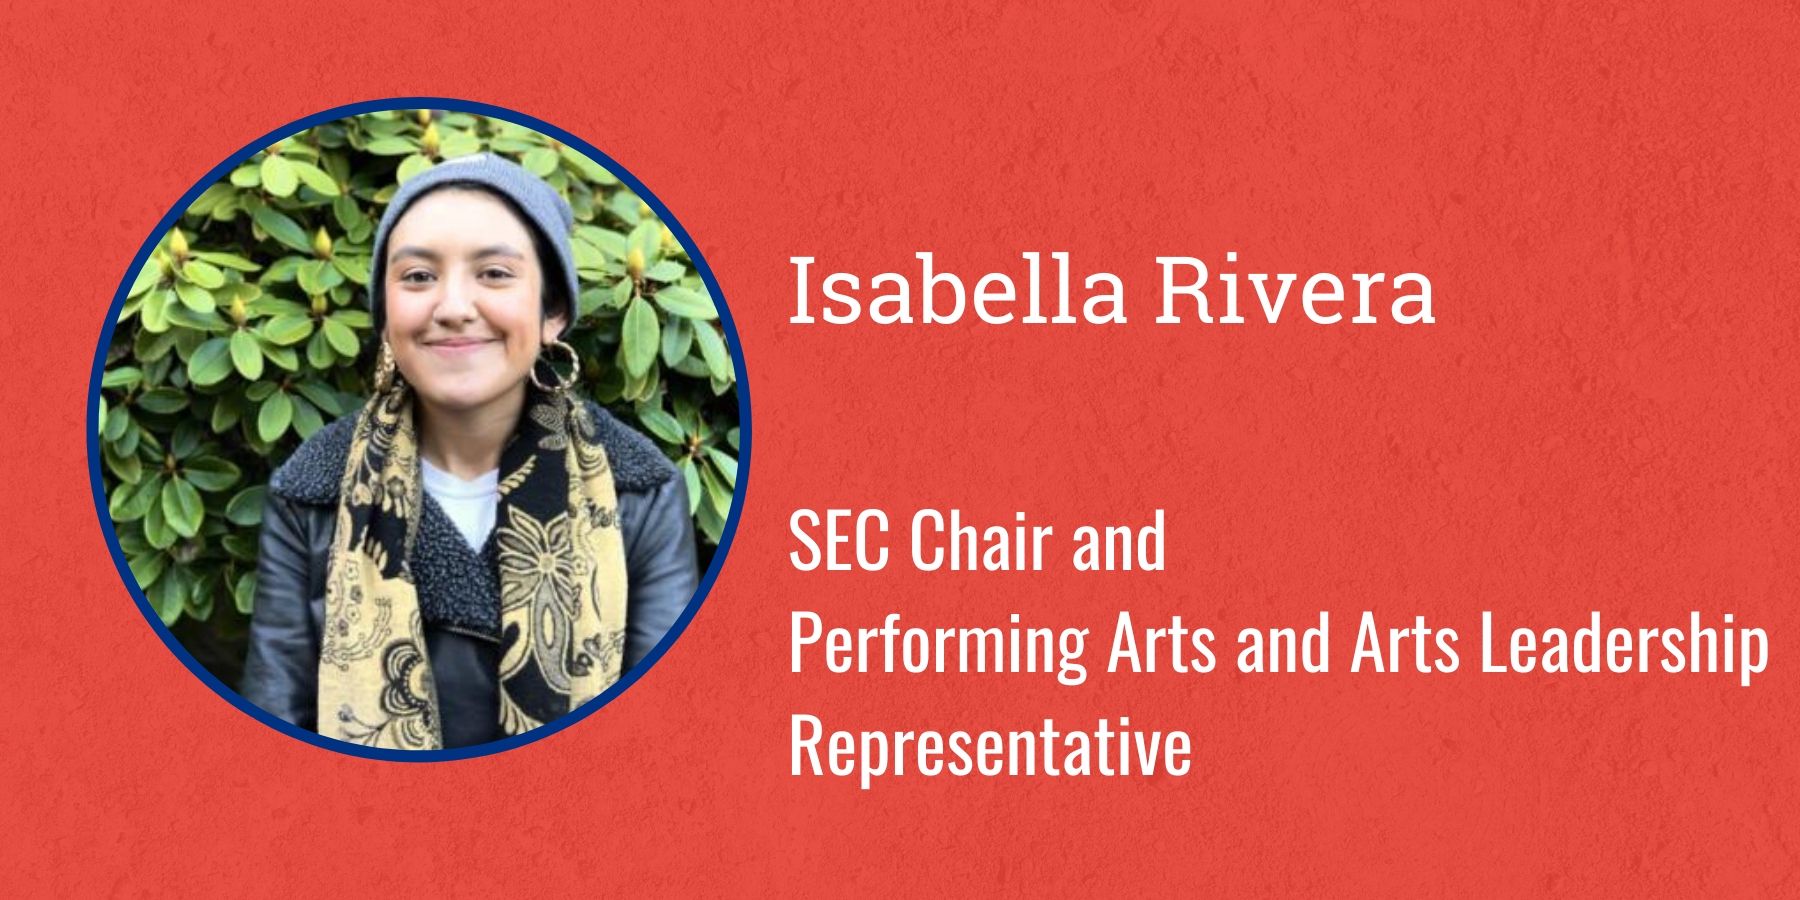 Photo of Isabella Rivera and text SEC Chair and Performing Arts and Arts Leadership Representative